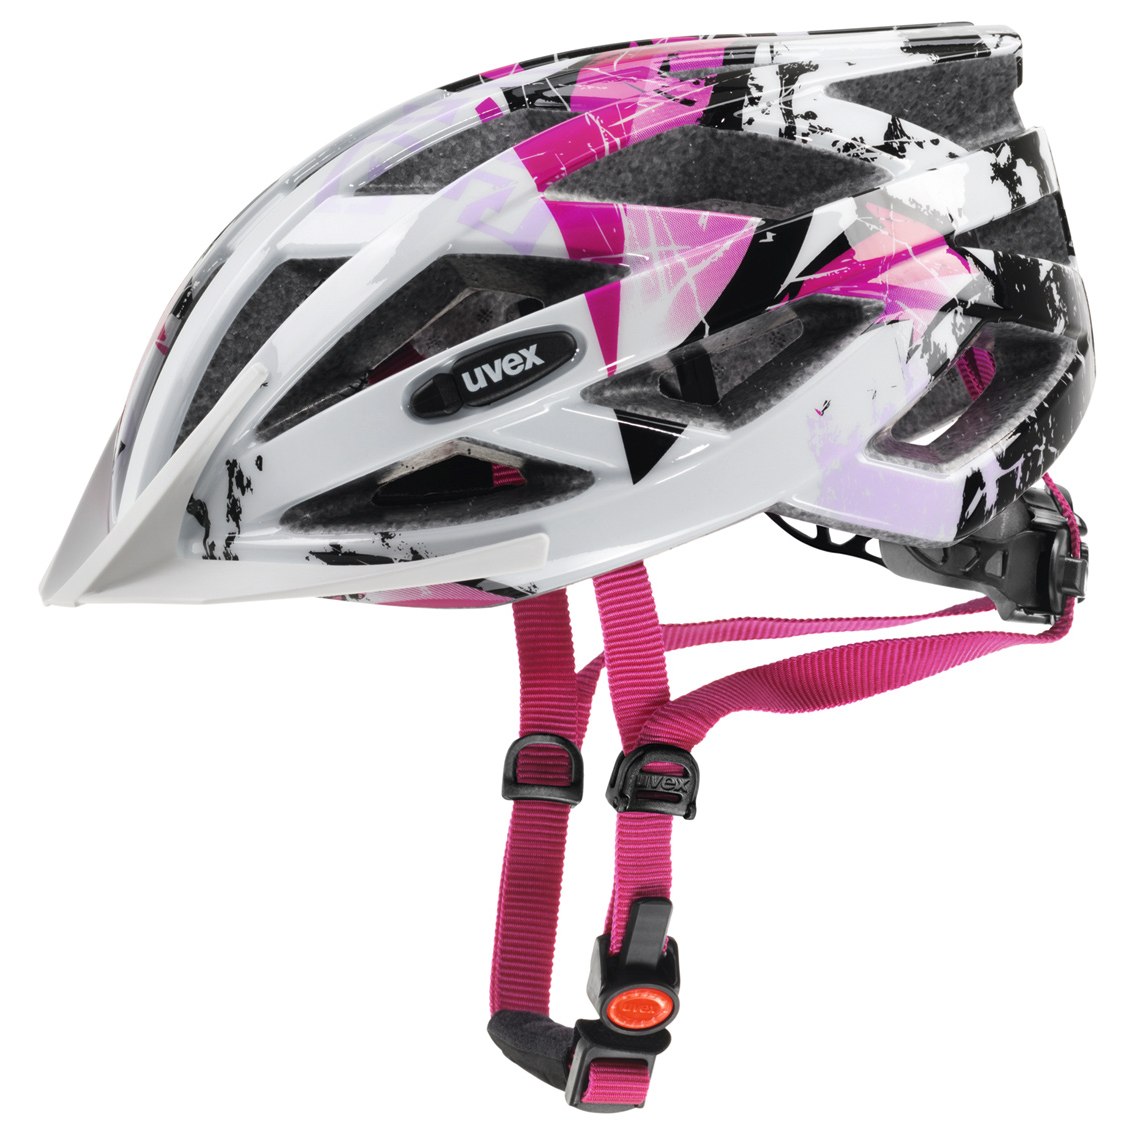 Produktbild von Uvex air wing Helm - white-pink